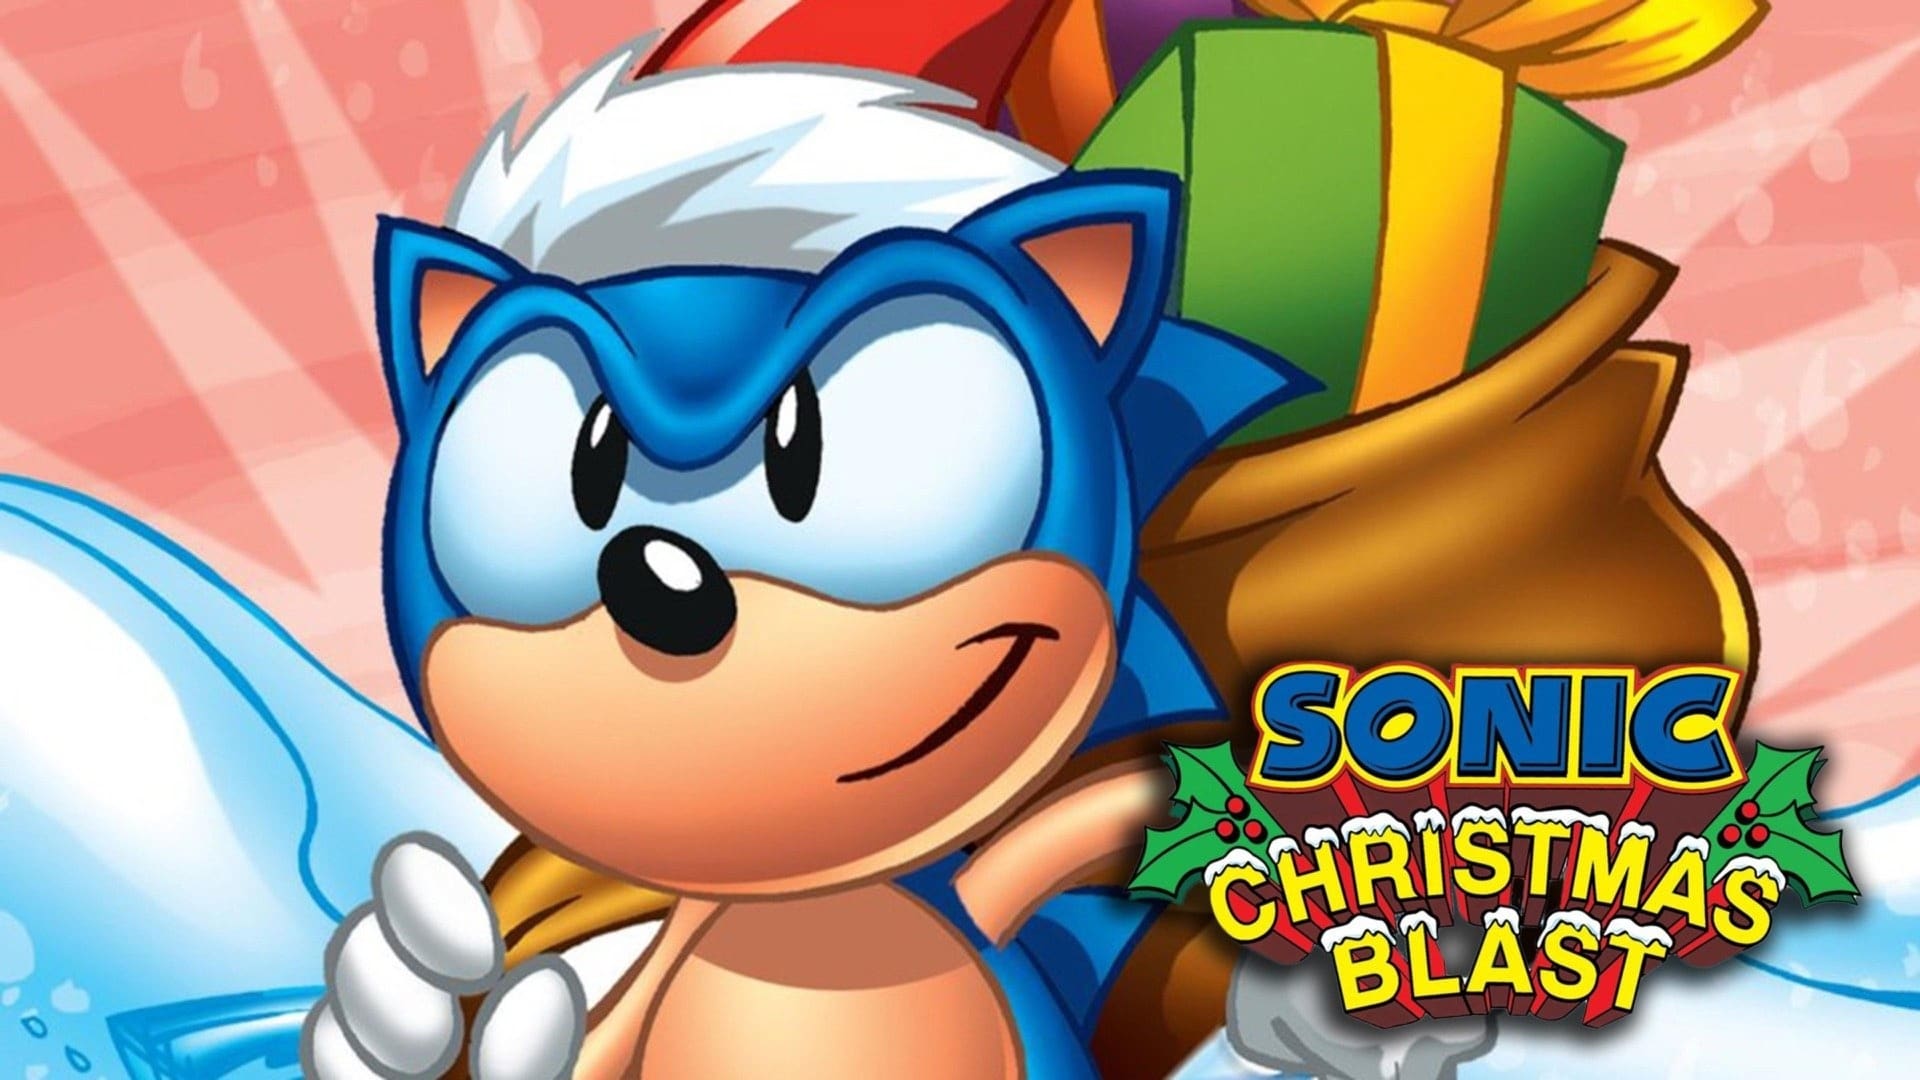 Sonic: Świąteczna przygoda